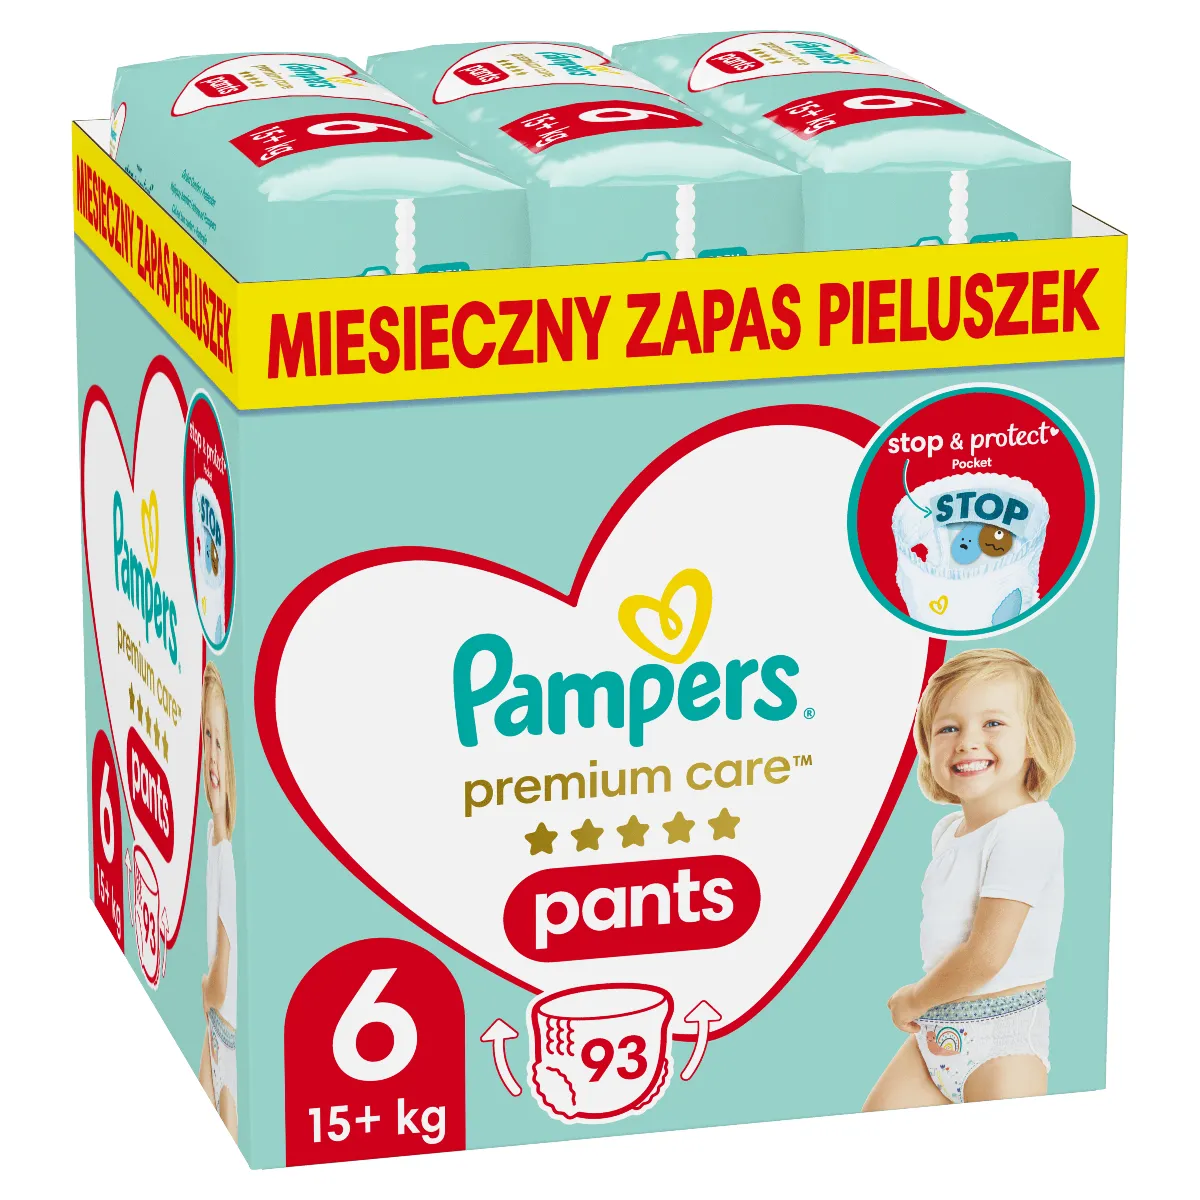 Pampers Premium Care Pants Extra Large pieluszki jednorazowe rozmiar 6, 15+ kg, 93 szt.